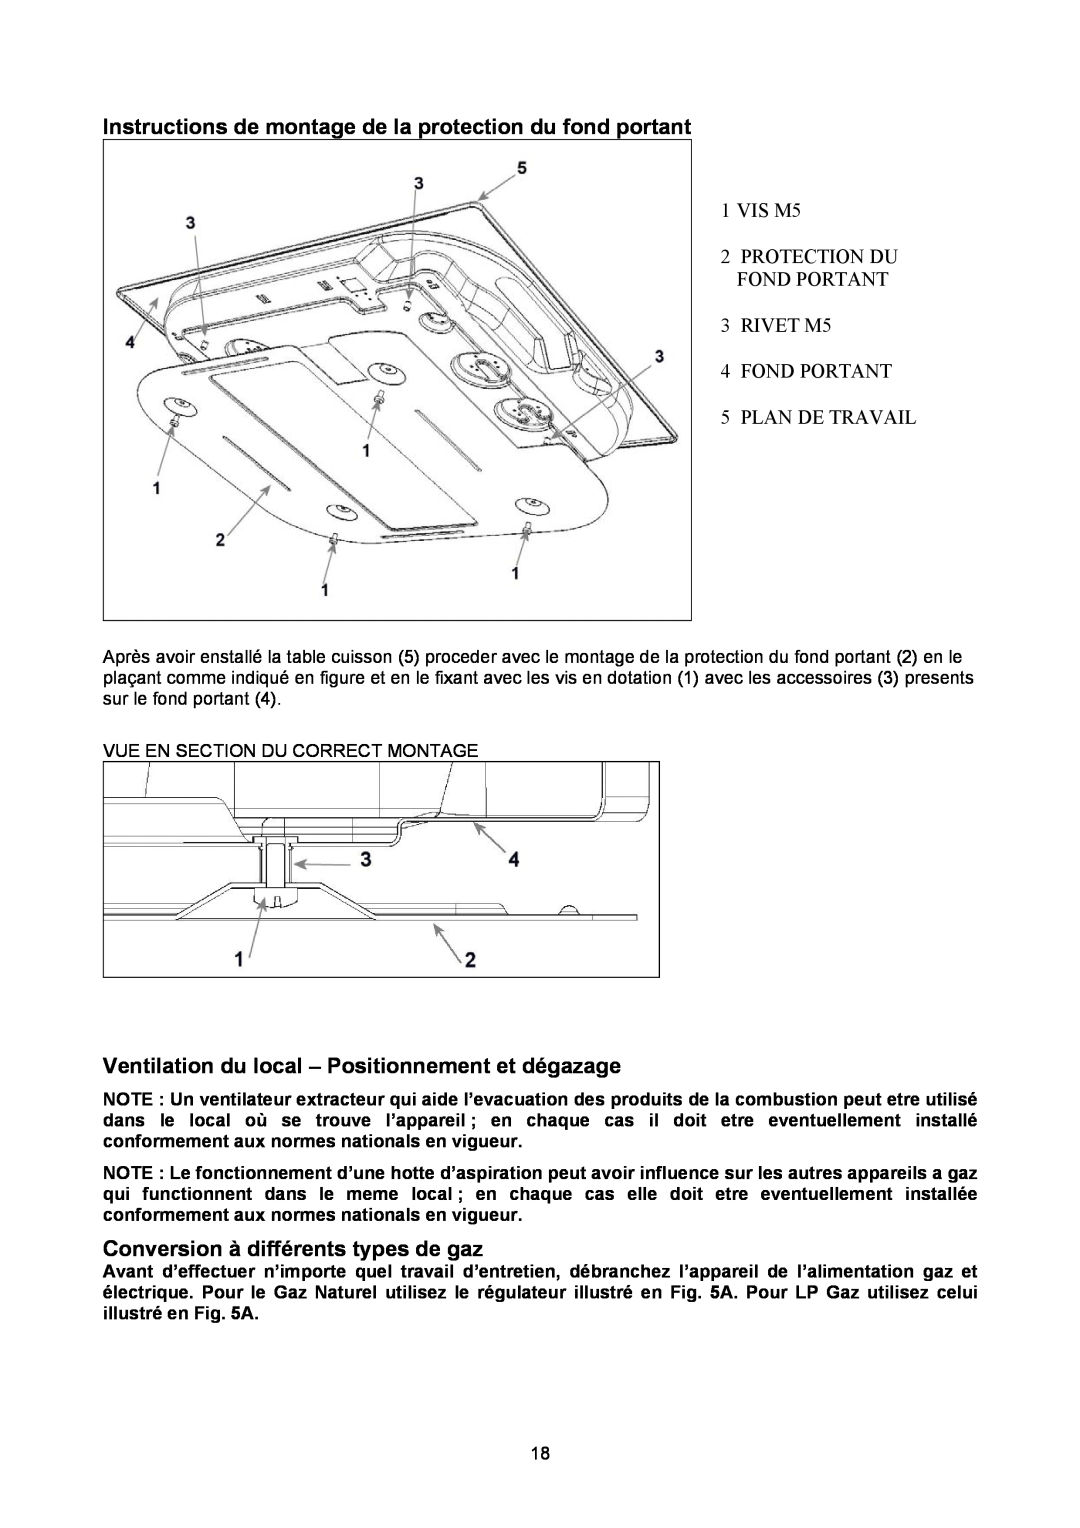 Bertazzoni P24400X manual Instructions de montage de la protection du fond portant, Conversion à différents types de gaz 